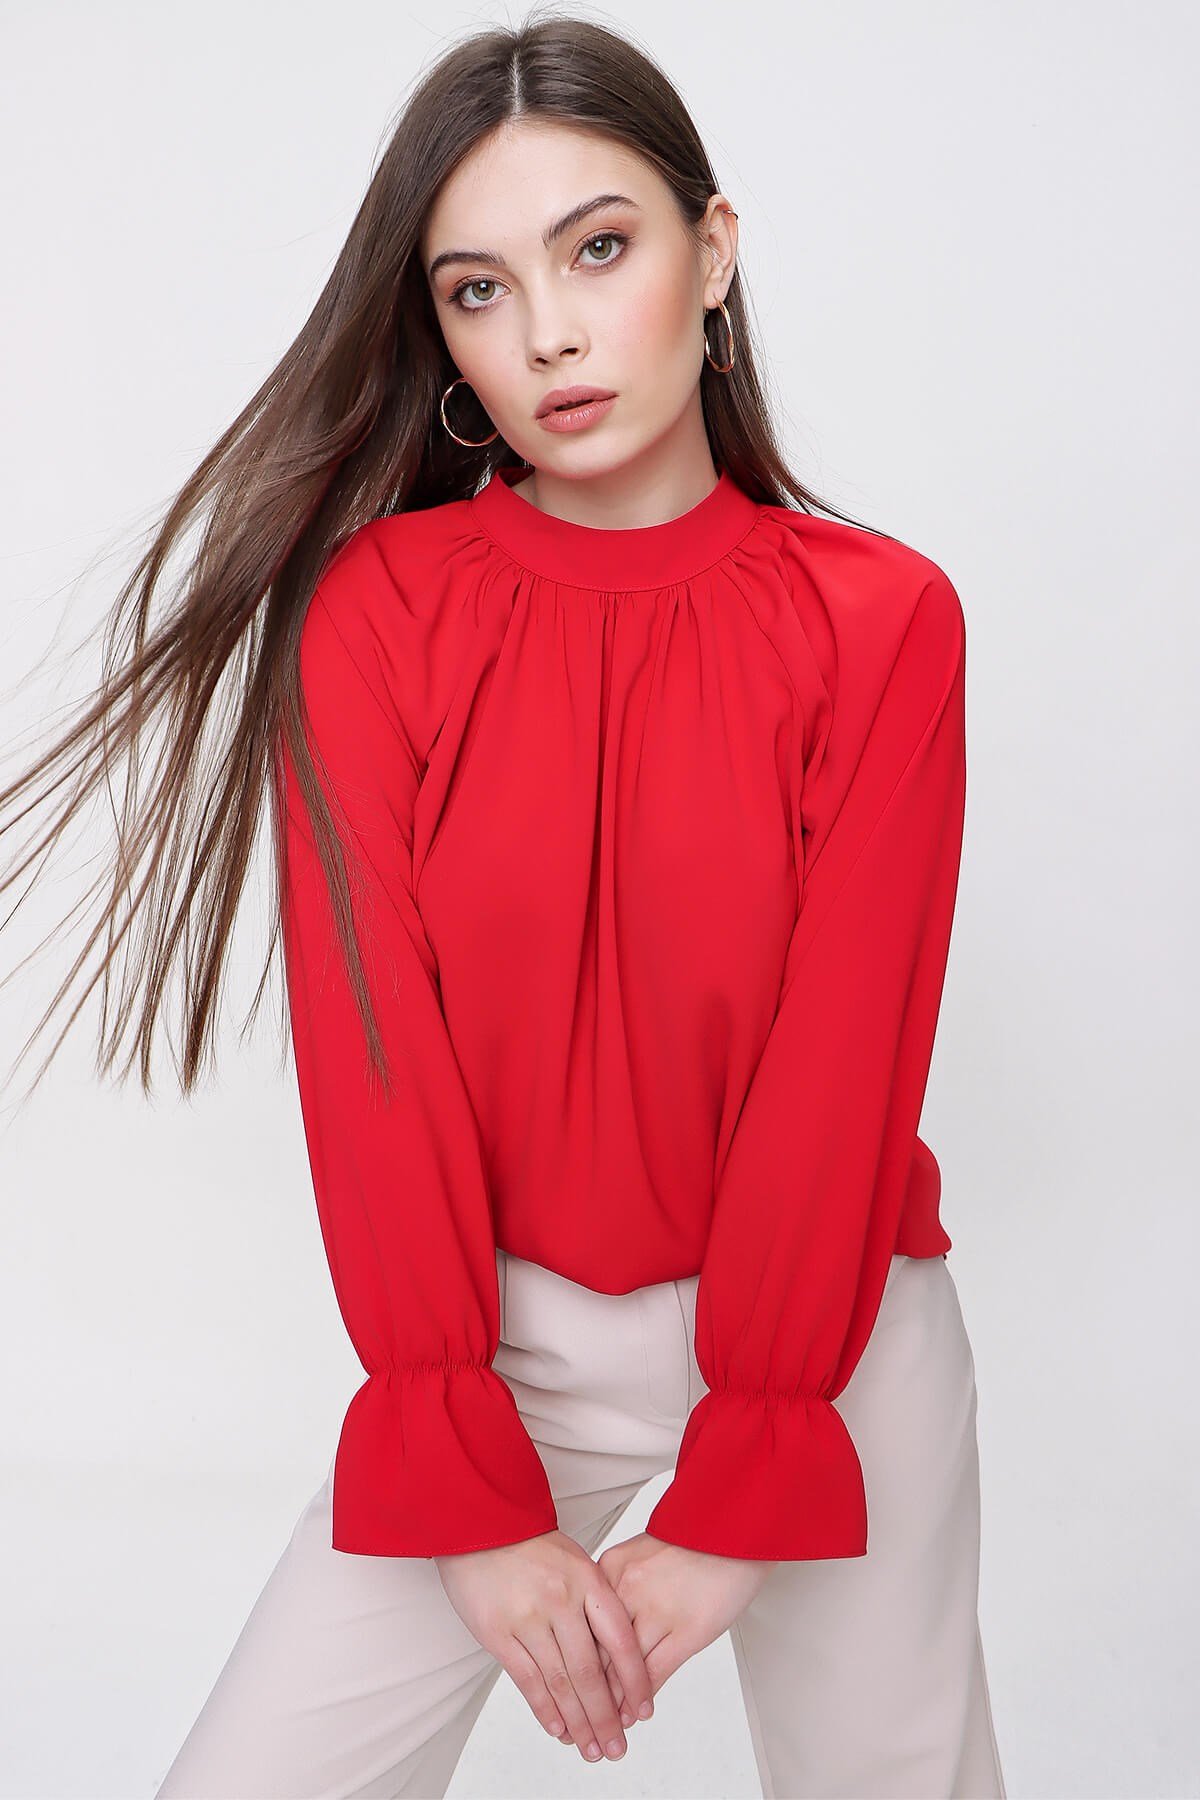 Kadın Kırmızı Yaka Büzgülü Kol Lastikli Bluz - Butik Buruç